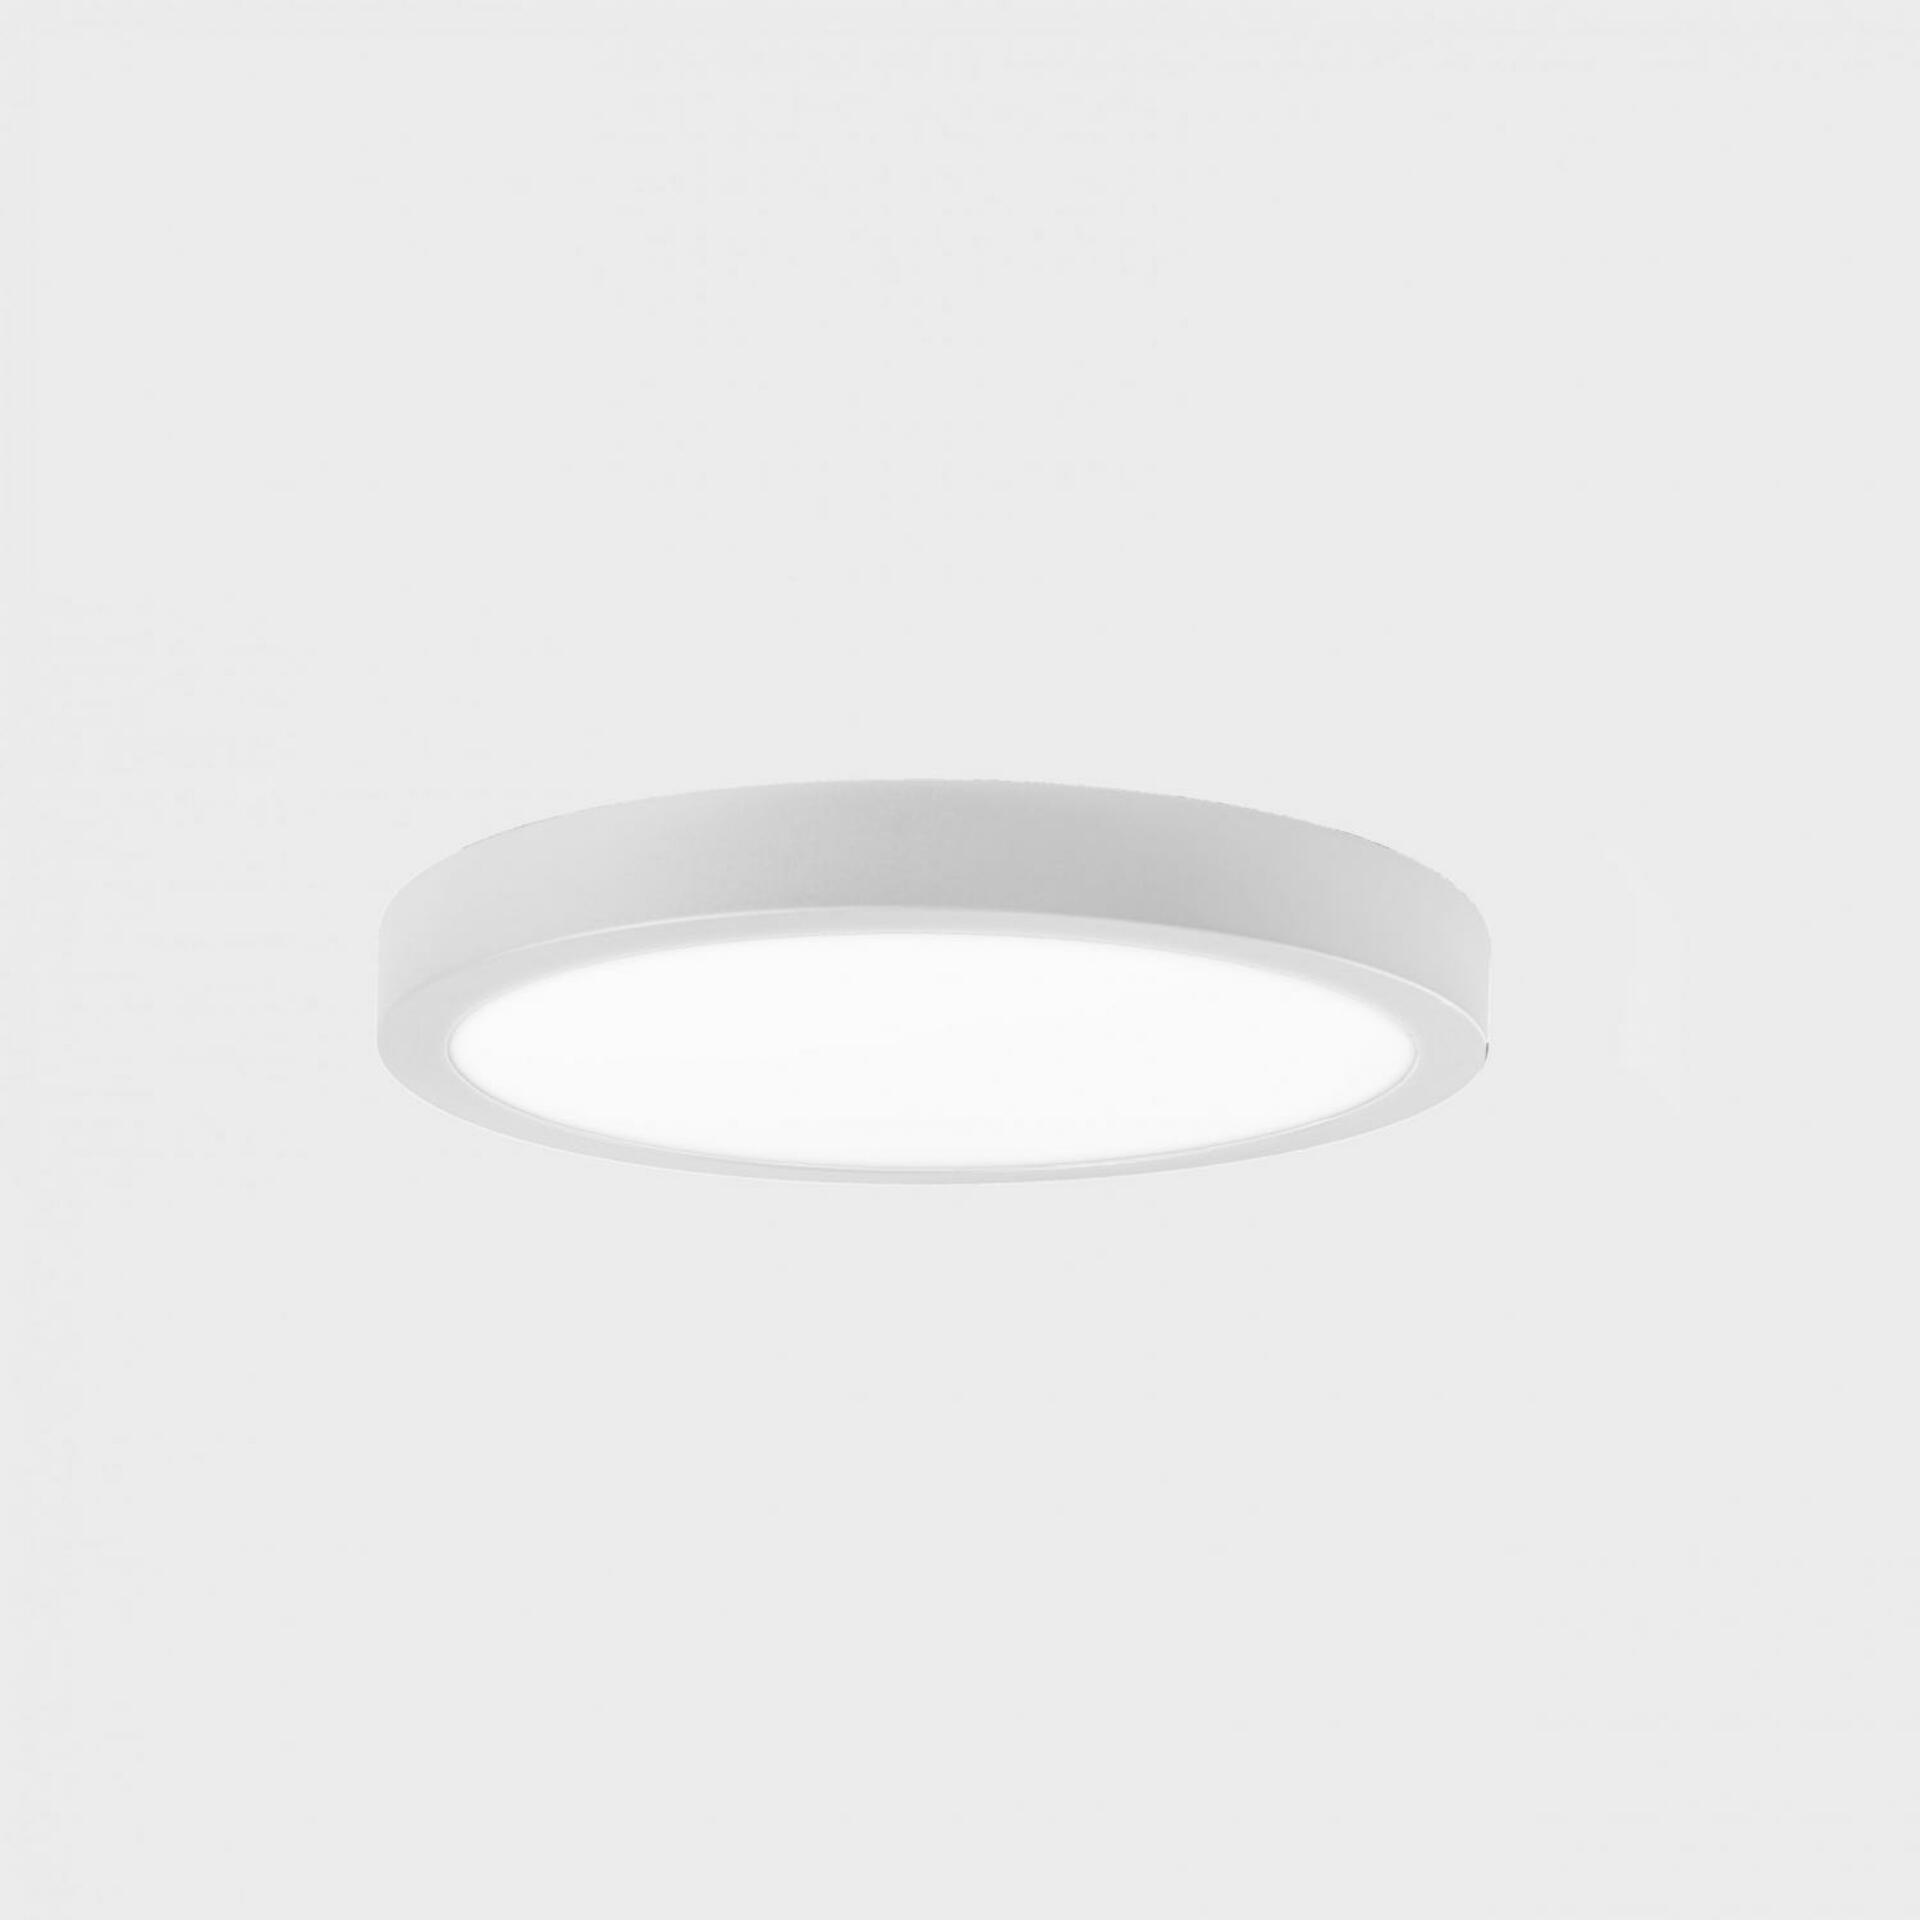 KOHL LIGHTING KOHL-Lighting DISC SLIM stropní svítidlo pr. 300 mm bílá 24 W CRI 80 3000K Non-Dimm